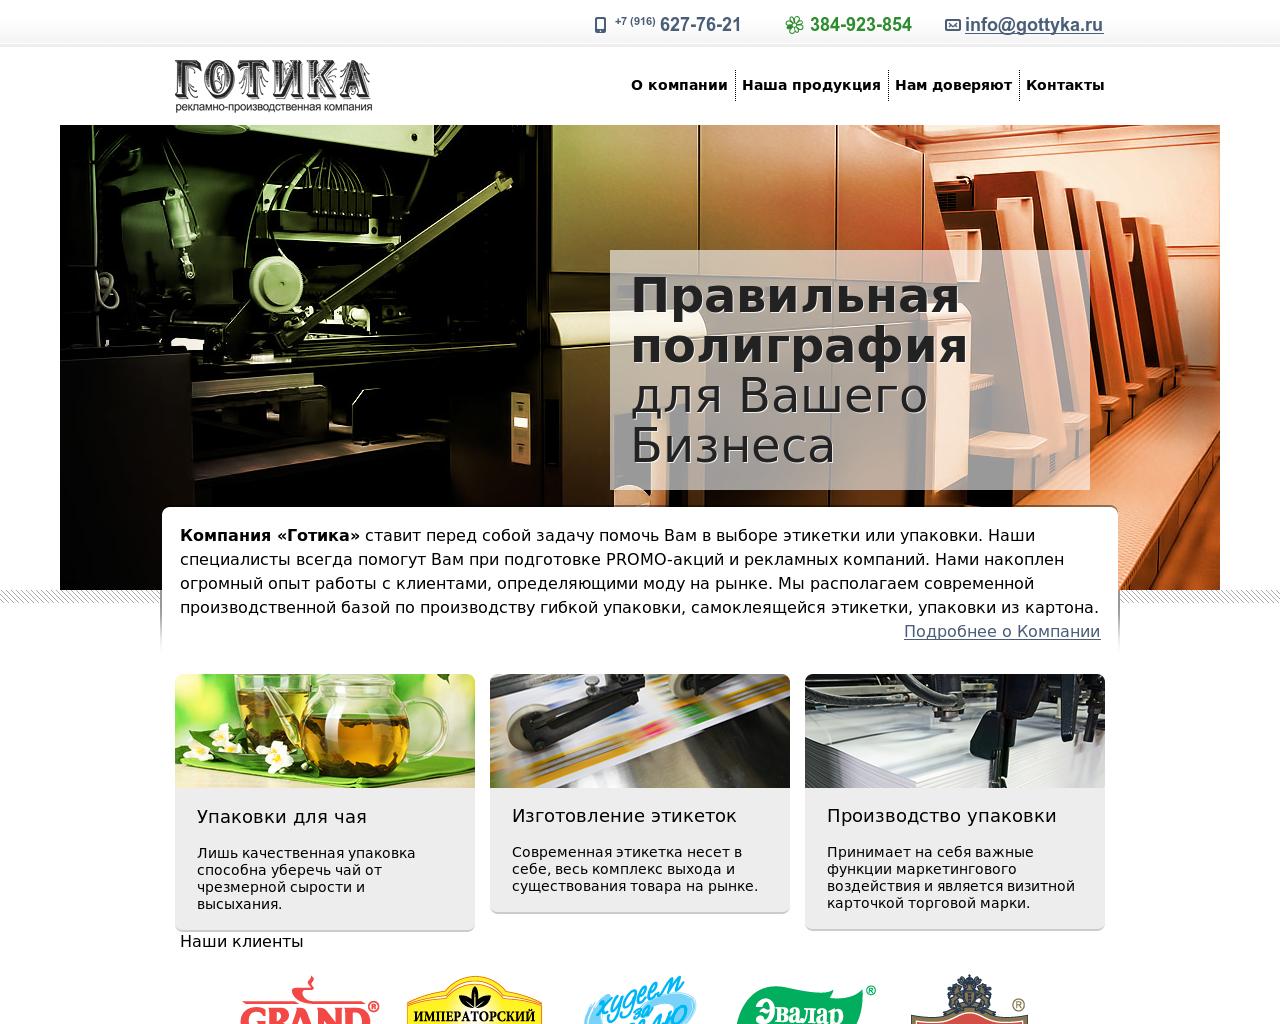 Изображение сайта gottyka.ru в разрешении 1280x1024